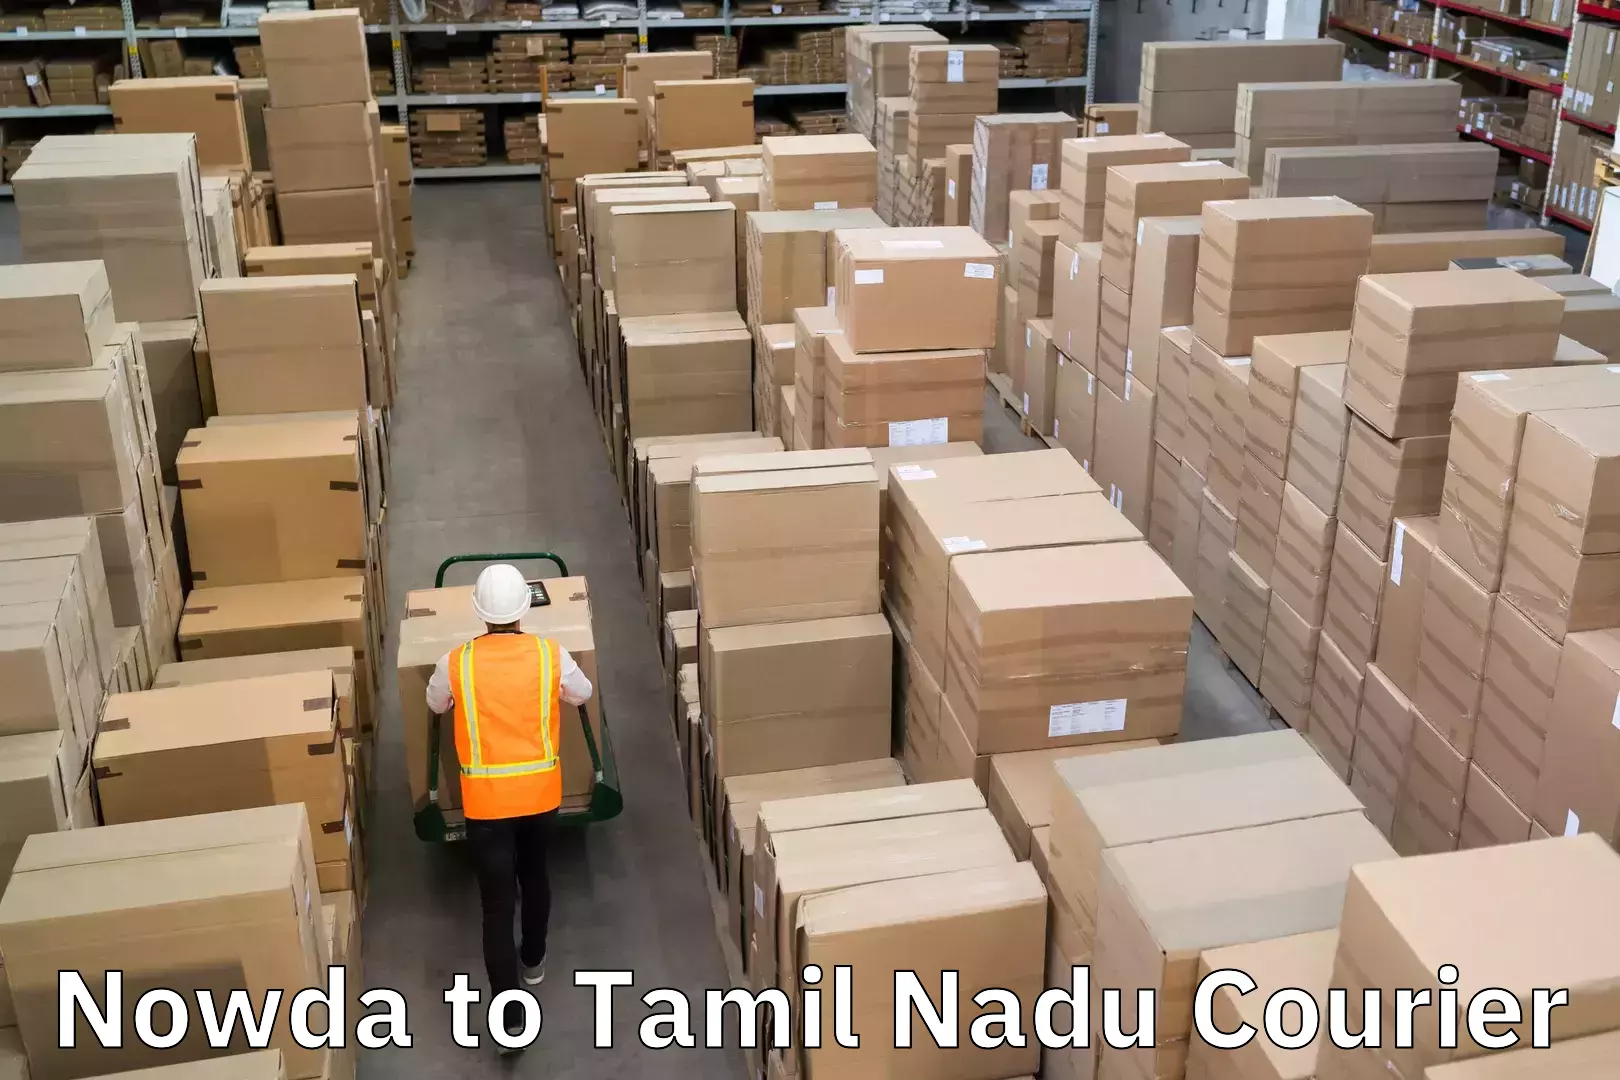 Efficient freight service Nowda to Tamil Nadu